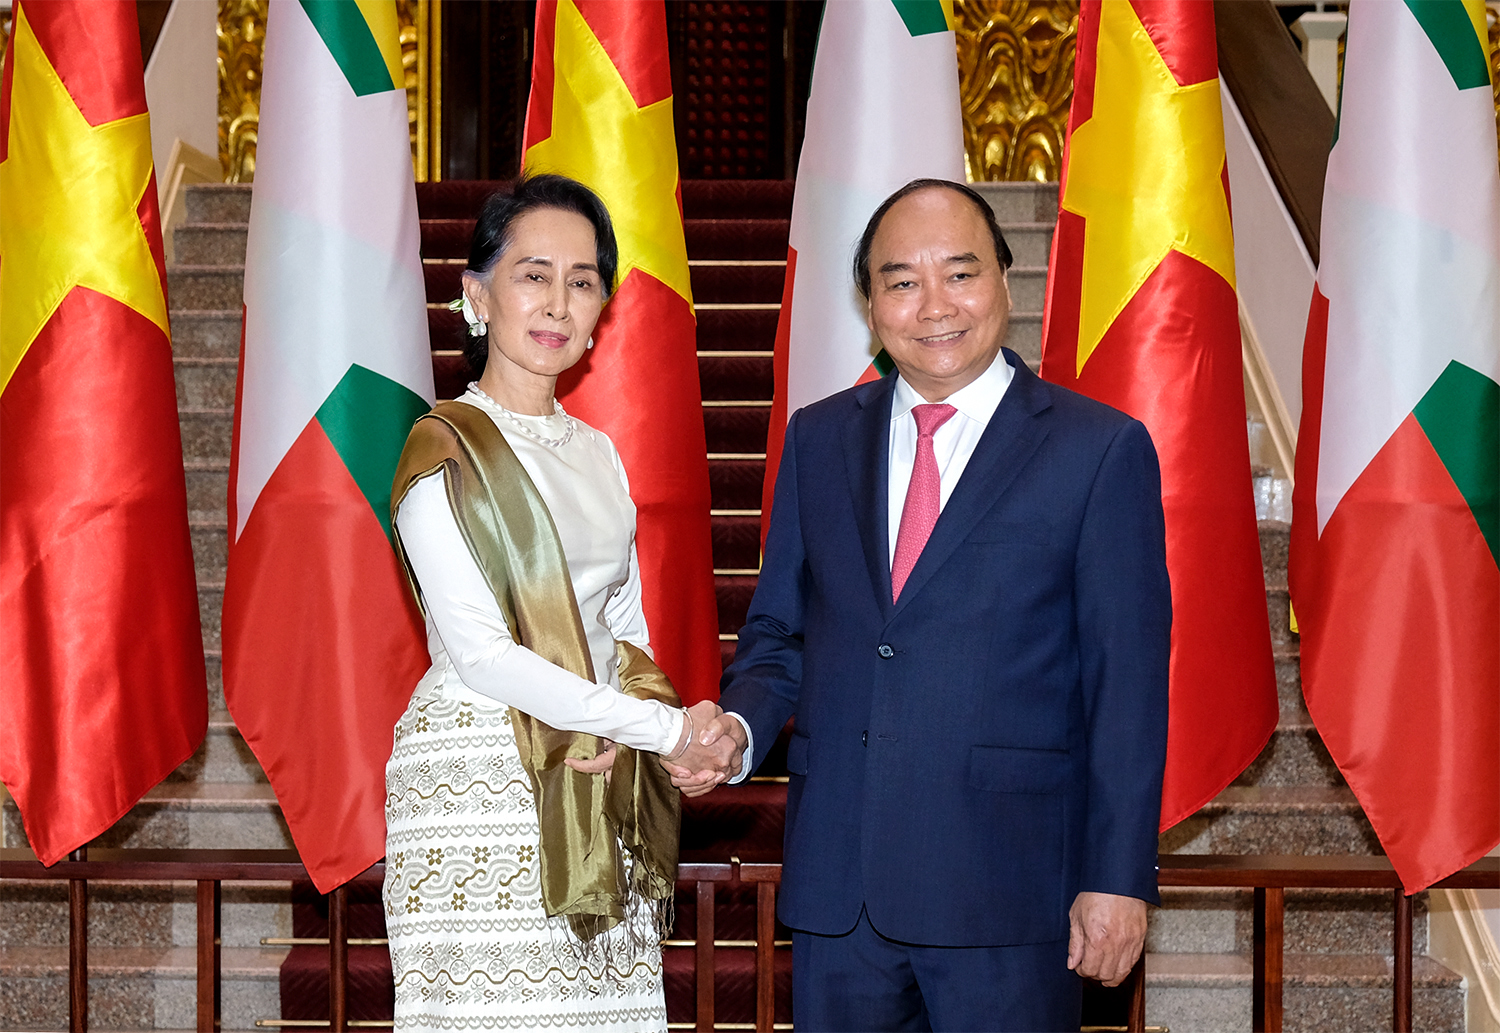 Thủ tướng Nguyễn Xuân Phúc đã có cuộc hội đàm với cố vấn Nhà nước Myanmar, tập trung vào vấn đề đẩy mạnh hợp tác kinh tế, bảo vệ nhân dân và đối thoại chính trị giữa hai nước. Đây là tín hiệu tích cực cho sự phát triển kinh tế - xã hội của cả hai dân tộc.